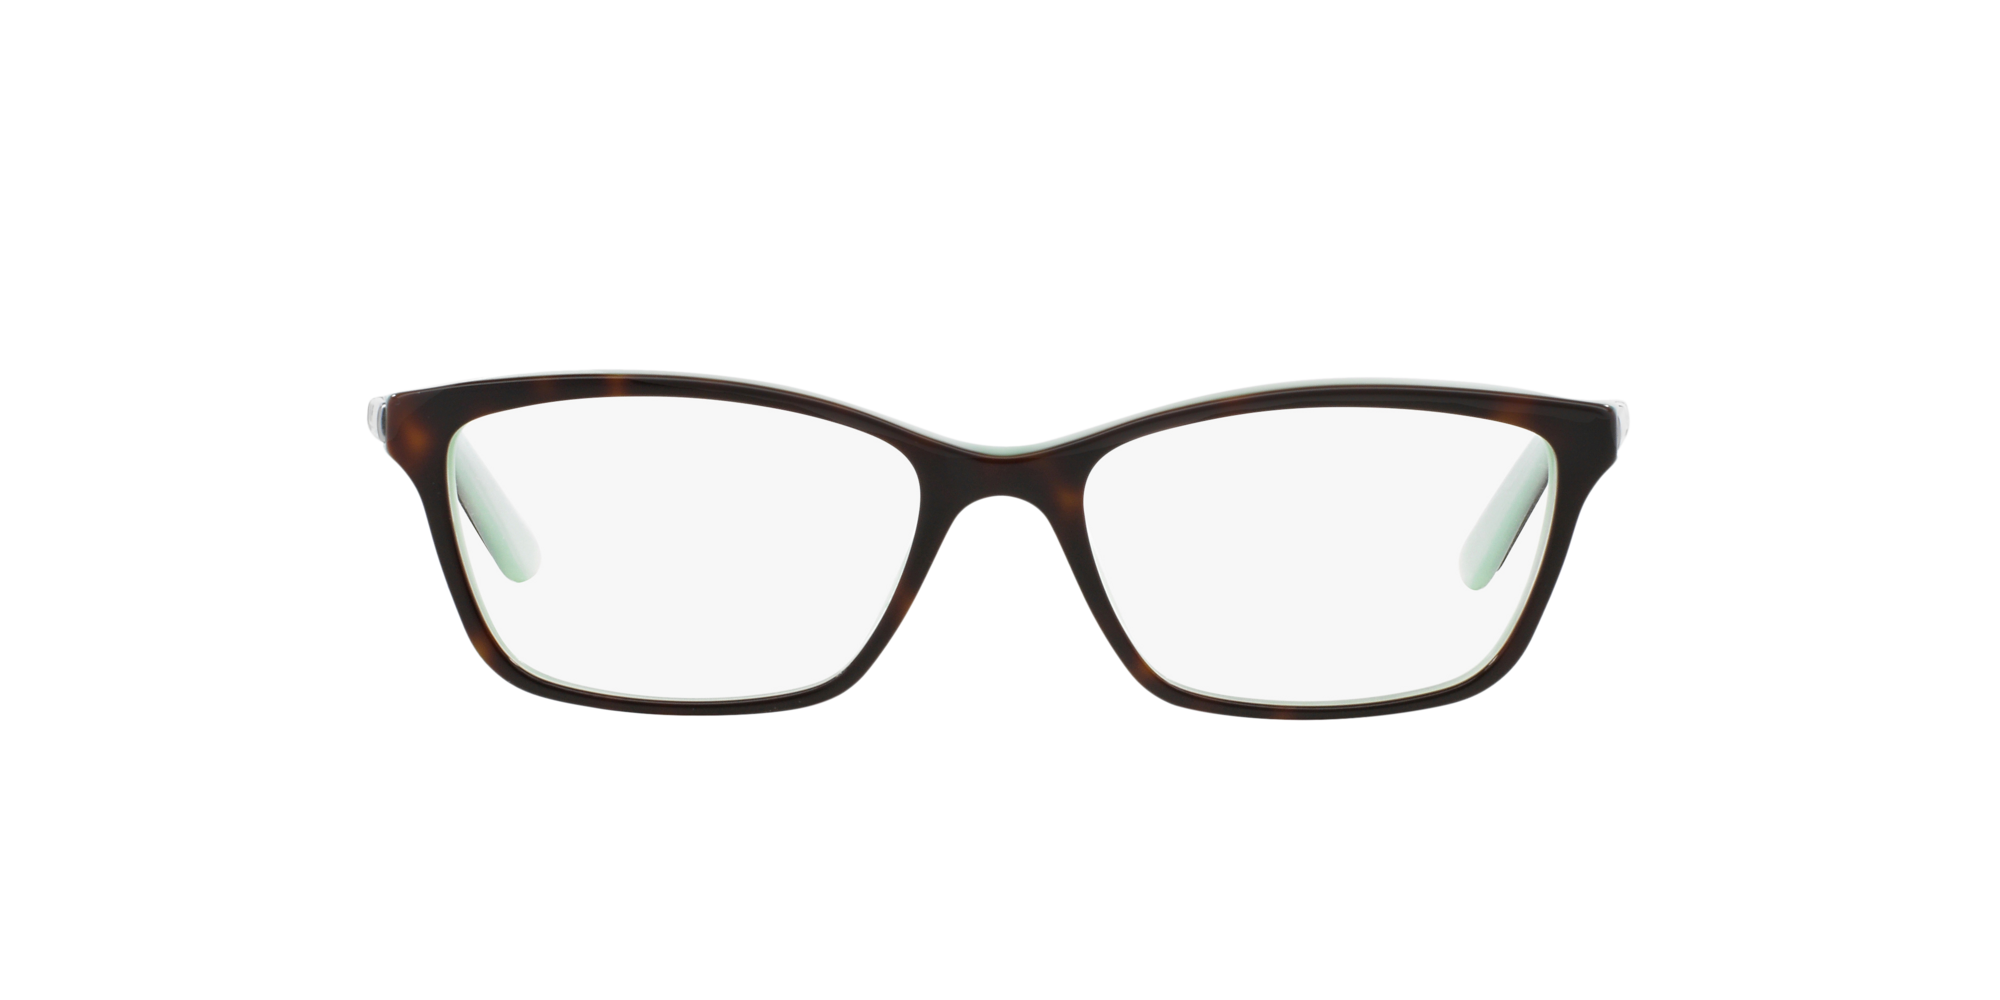 ralph lauren eyeglasses lenscrafters